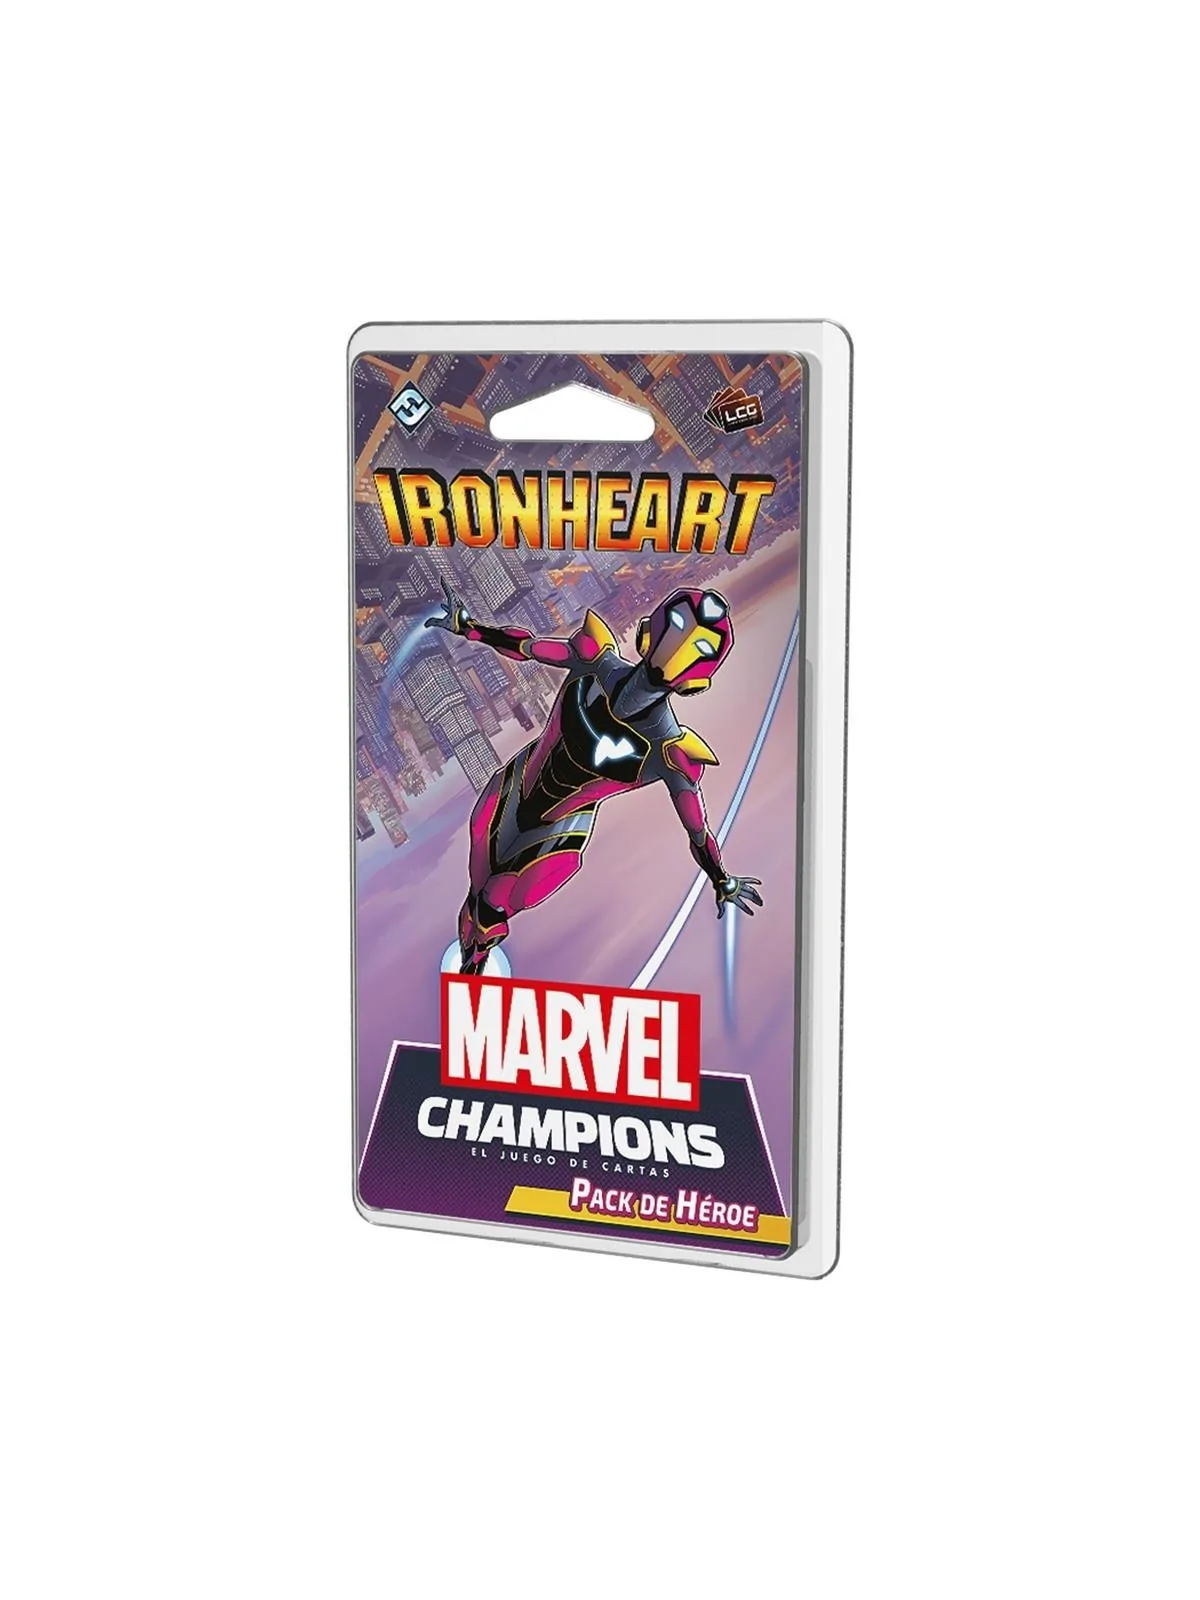 Comprar Marvel Champions: Ironheart barato al mejor precio 15,29 € de 